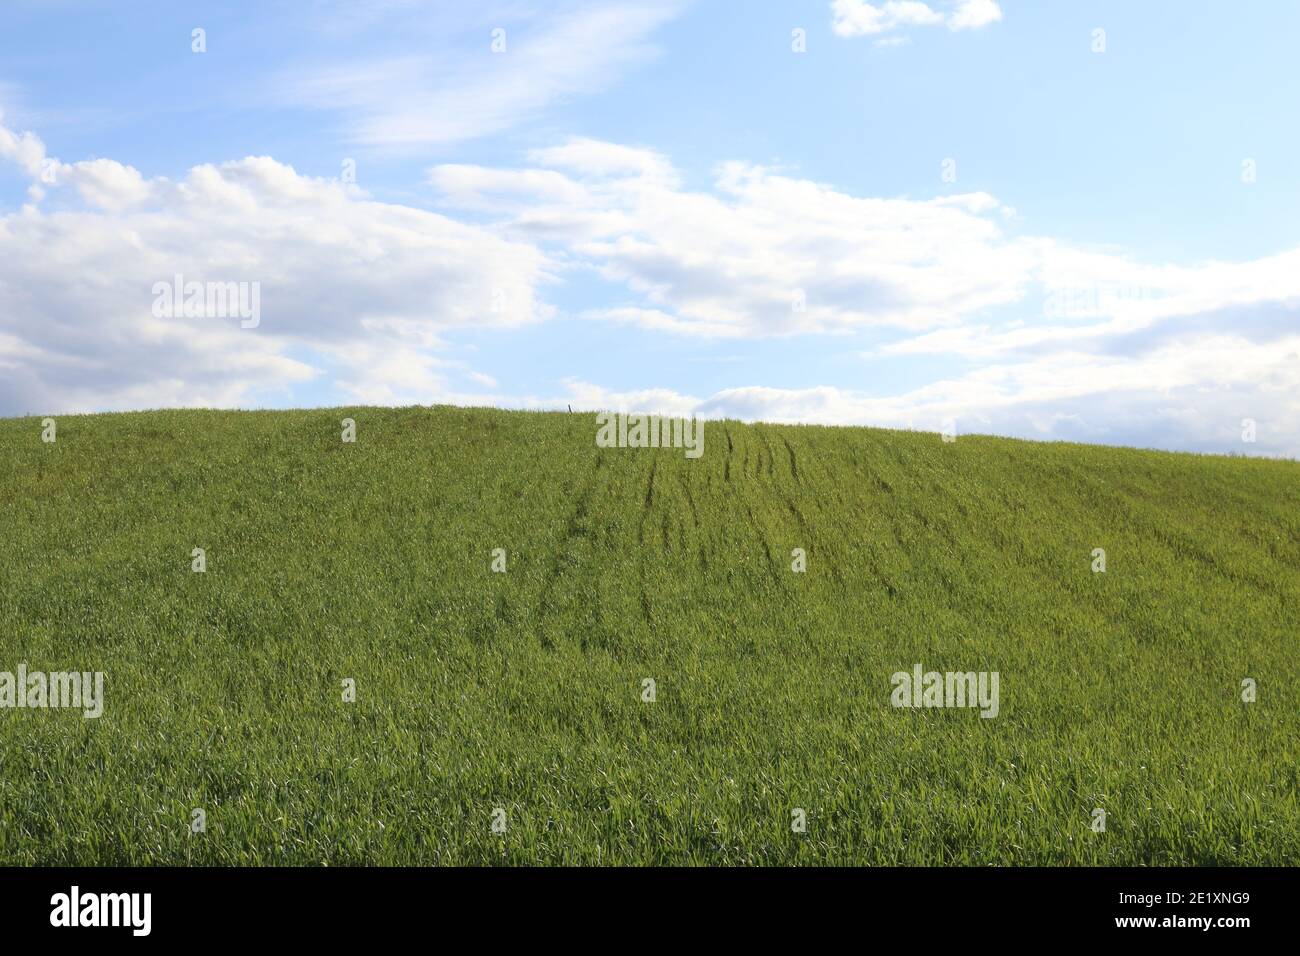 Farmland in spring Stock Photo